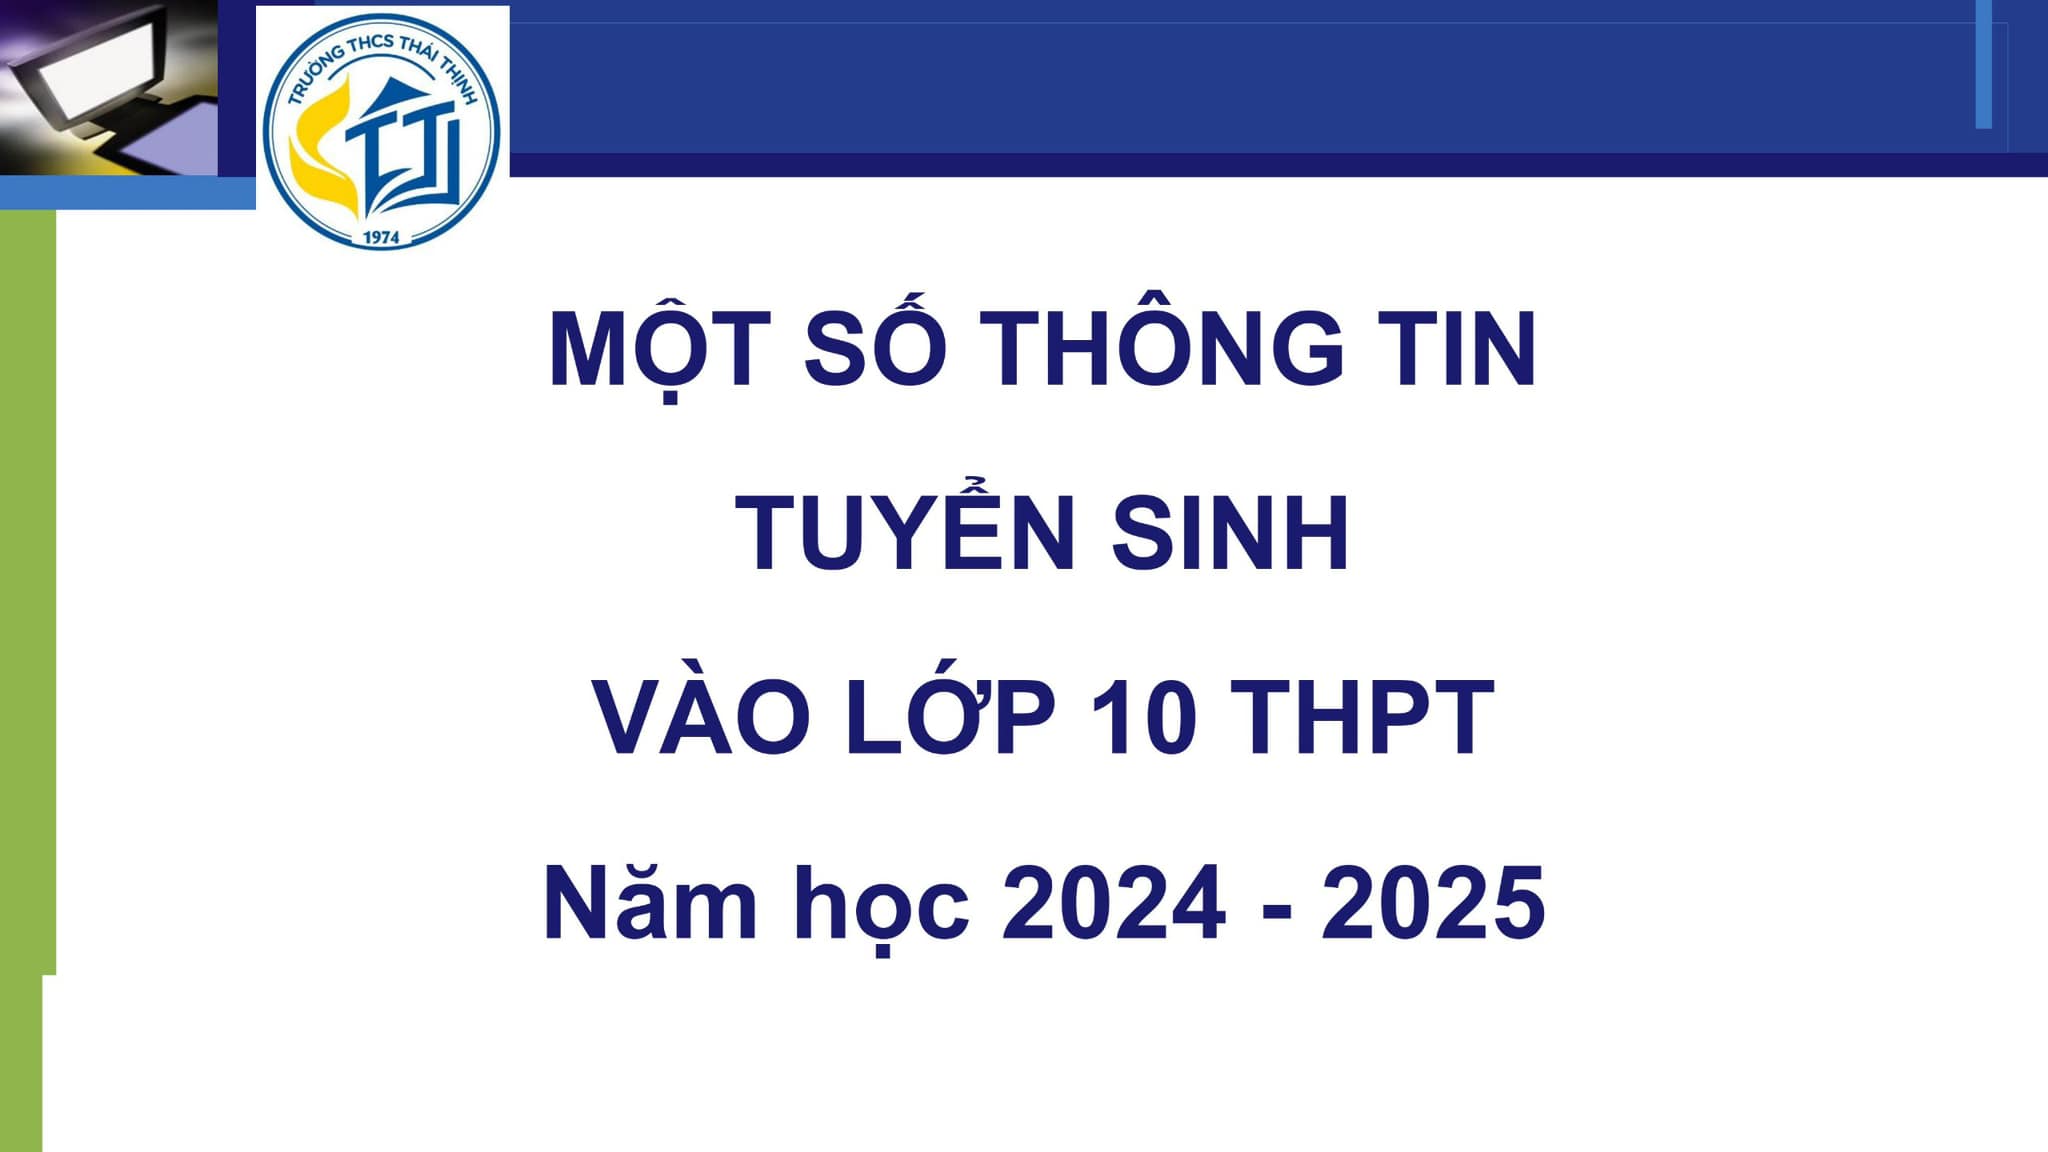 MỘT SỐ THÔNG TIN VỀ TUYỂN SINH VÀO LỚP 10 HÀ NỘI NĂM HỌC 2024-2025